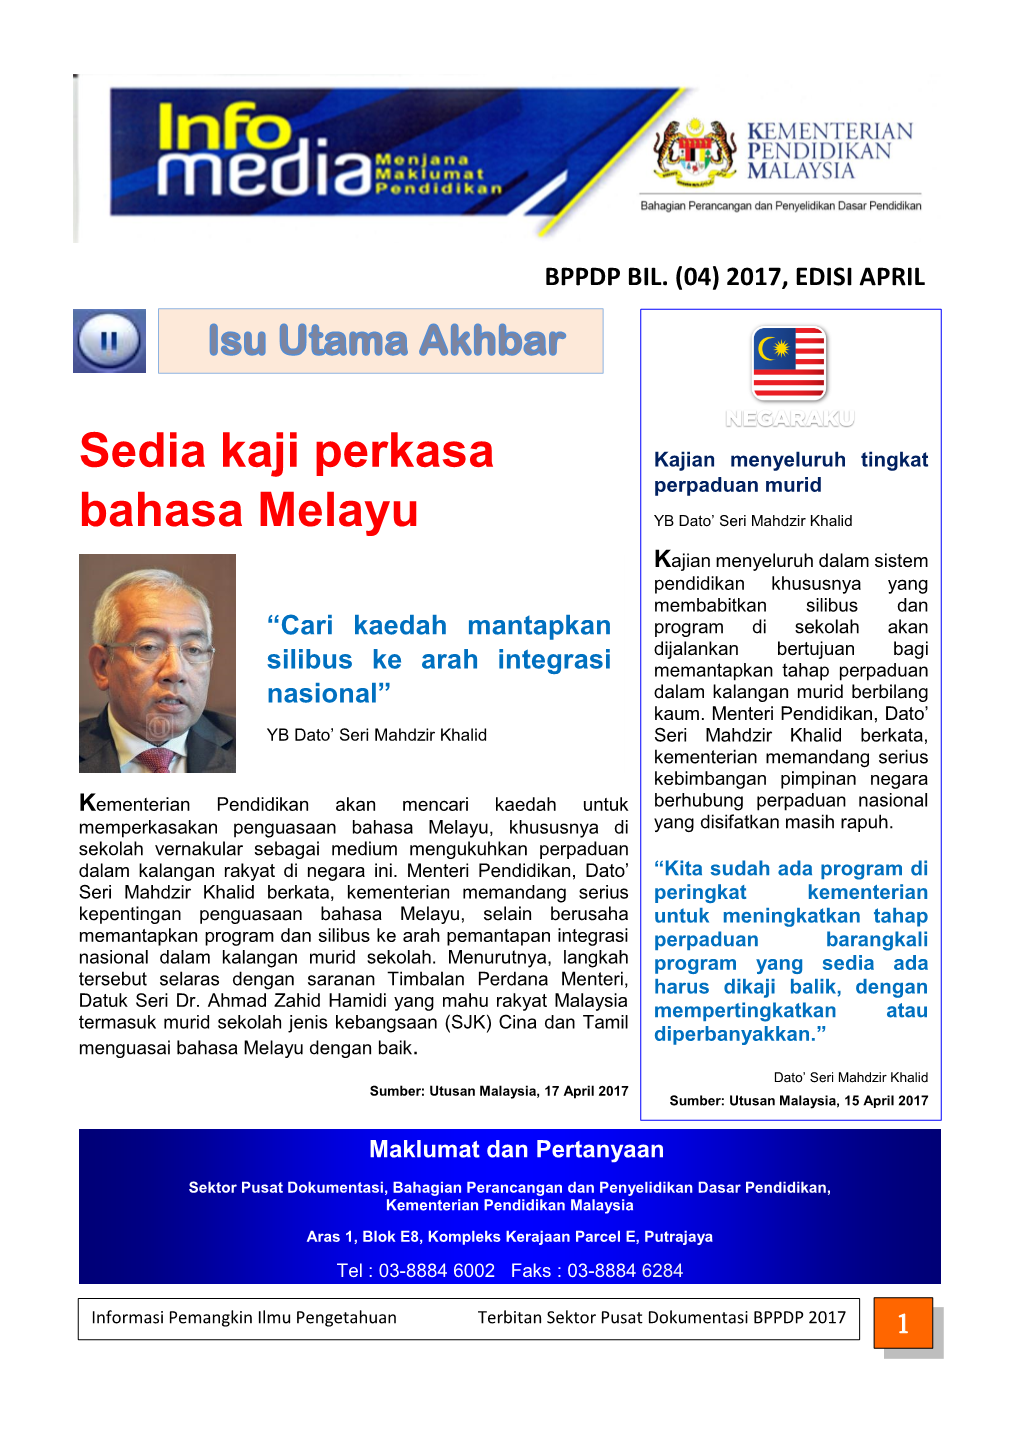 Sedia Kaji Perkasa Bahasa Melayu Kerajaan Setuju Mewujudkan Jawatan Penasihat